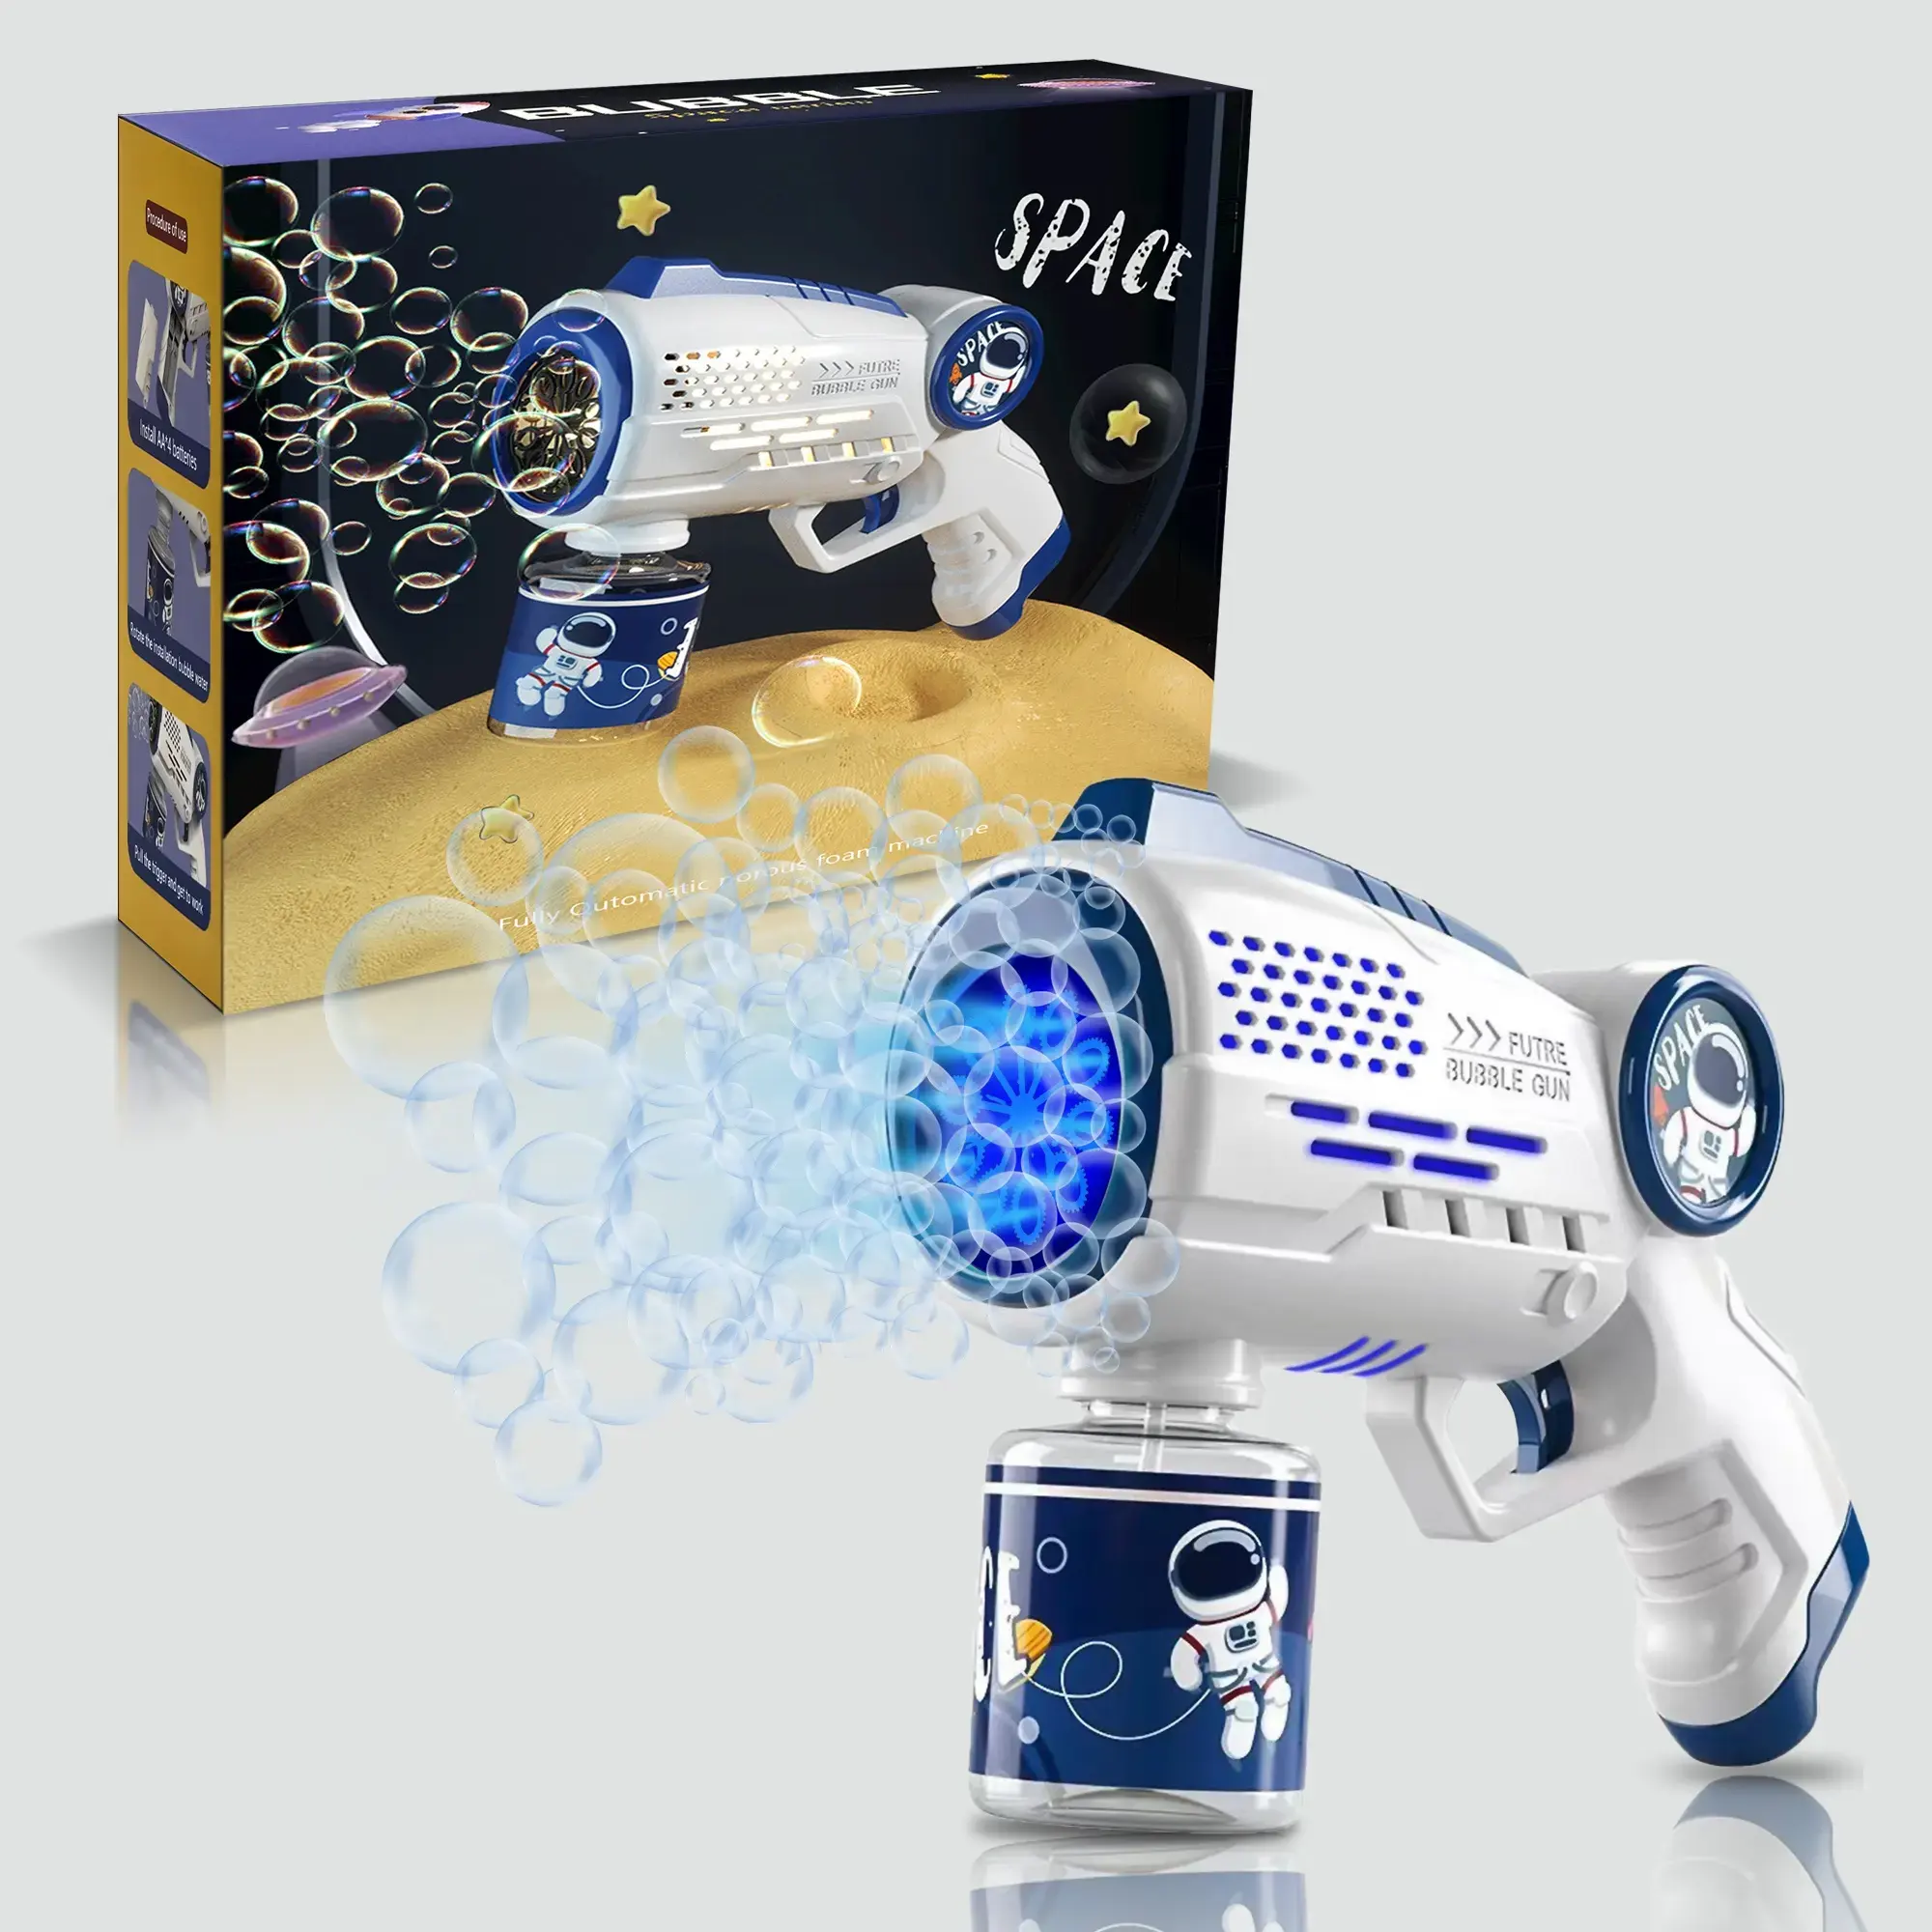 Máquina de arma de bolhas elétrica automática com 10 furos, anjo, som e efeitos de luz, para presente de aniversário, festa de casamento, brinquedo infantil, ideal para uso ao ar livre